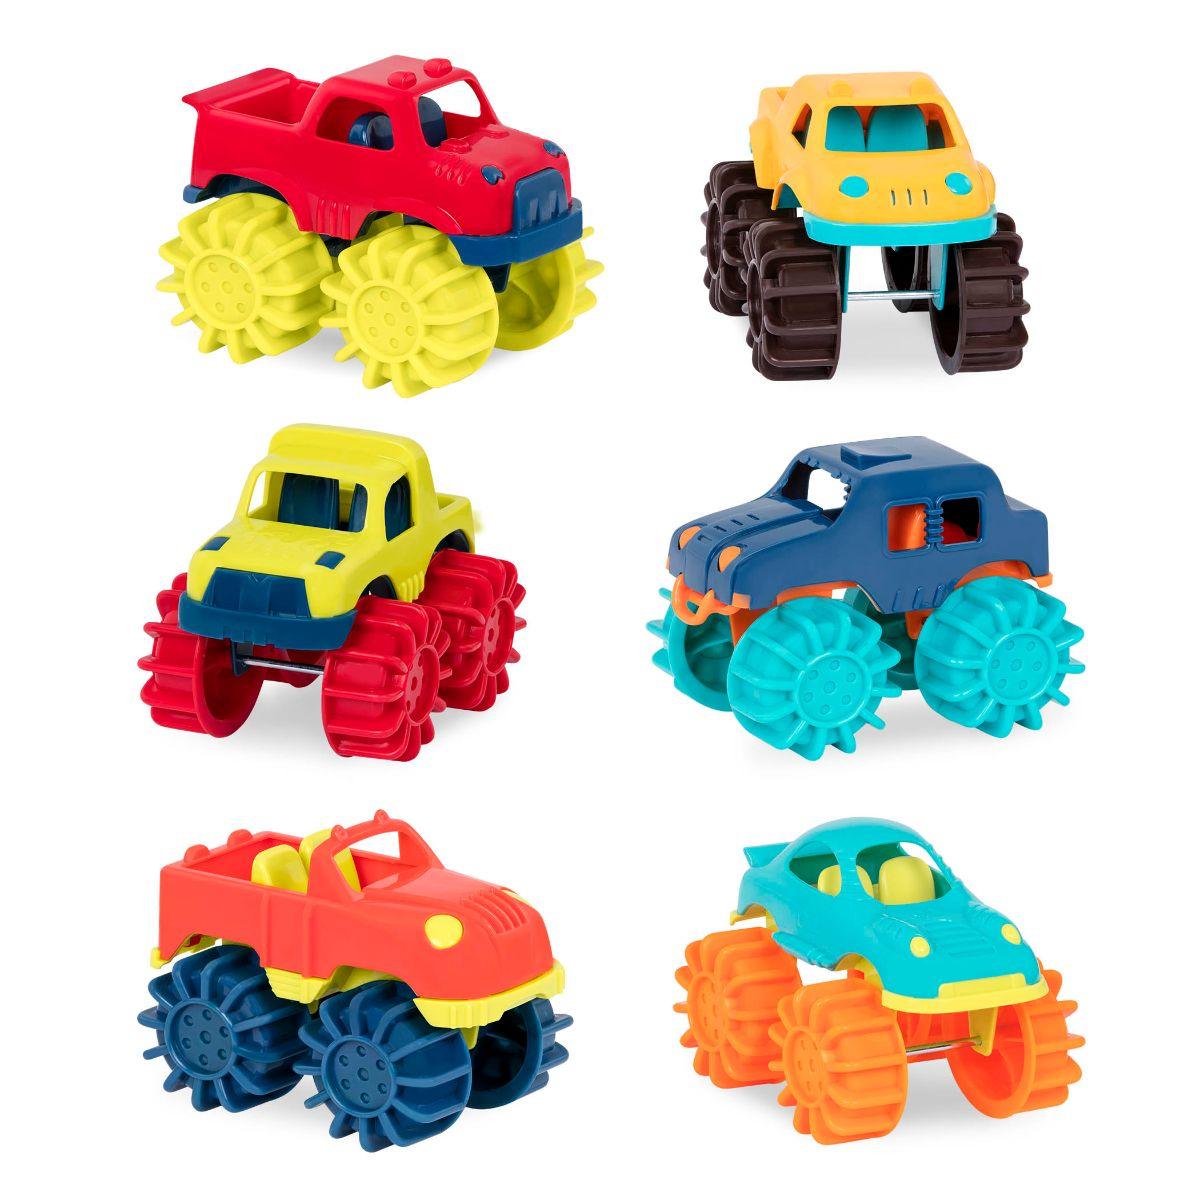 B.Toys: six monster trucks for Thunder Monster off-road fun